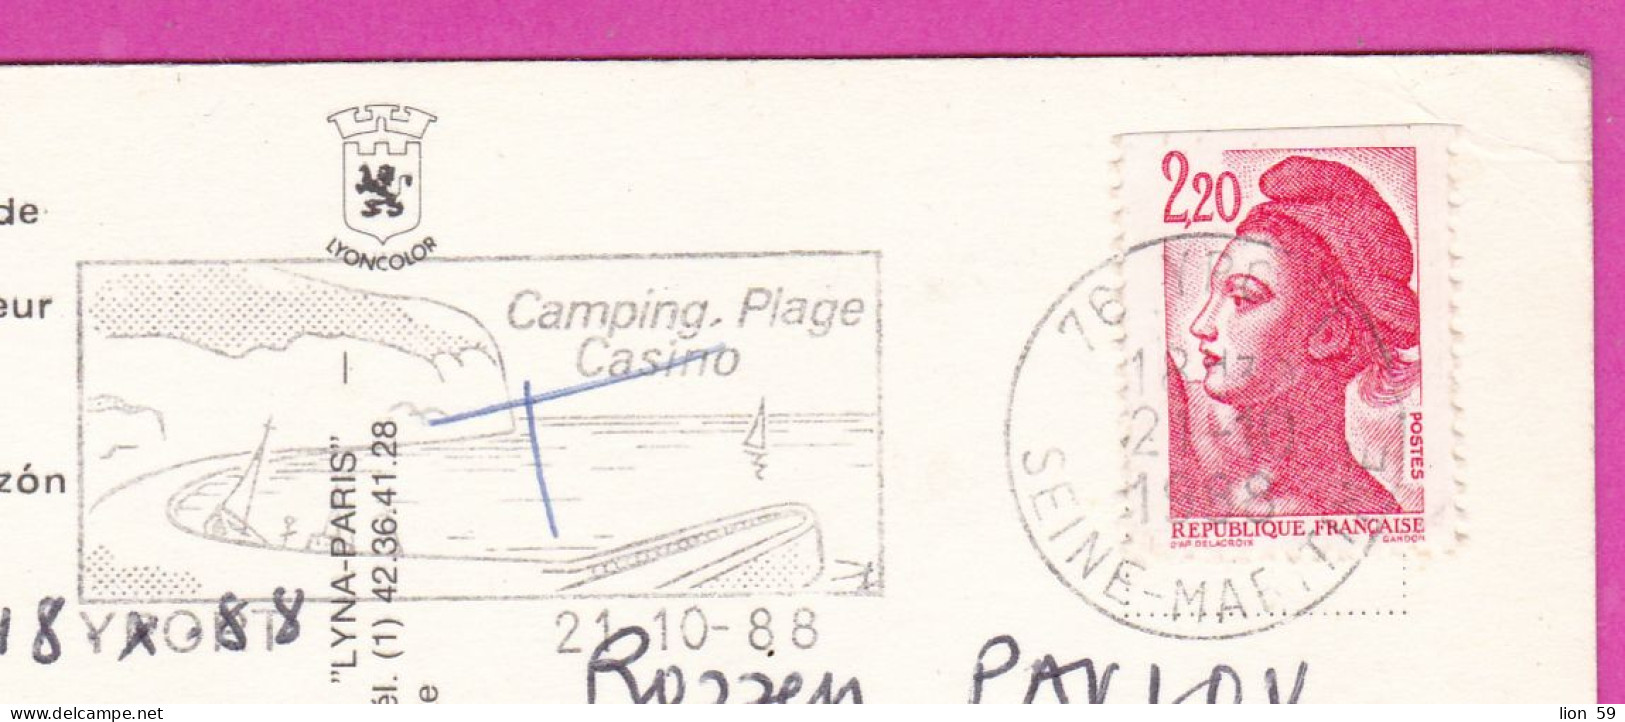 294233 / France - PARIS Basilique Du Sacré-Cœur PC 1988 Postage Due USED 2.20 Fr. Liberty Of Gandon Flamme Yport Camping - 1982-1990 Liberté De Gandon